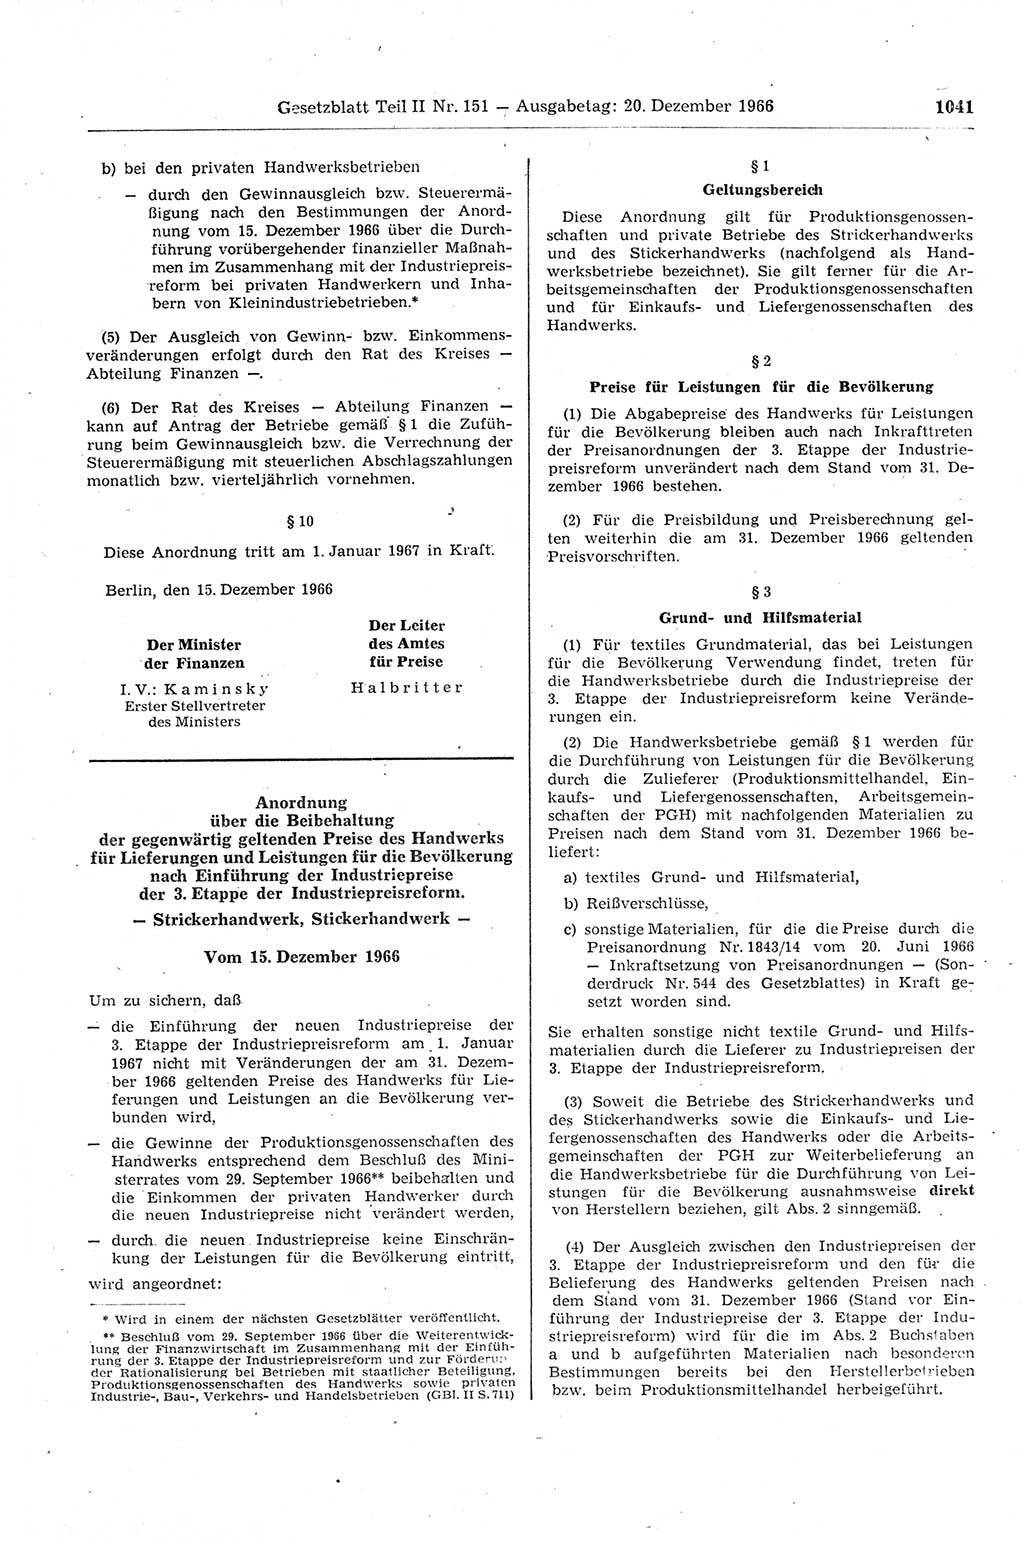 Gesetzblatt (GBl.) der Deutschen Demokratischen Republik (DDR) Teil ⅠⅠ 1966, Seite 1041 (GBl. DDR ⅠⅠ 1966, S. 1041)